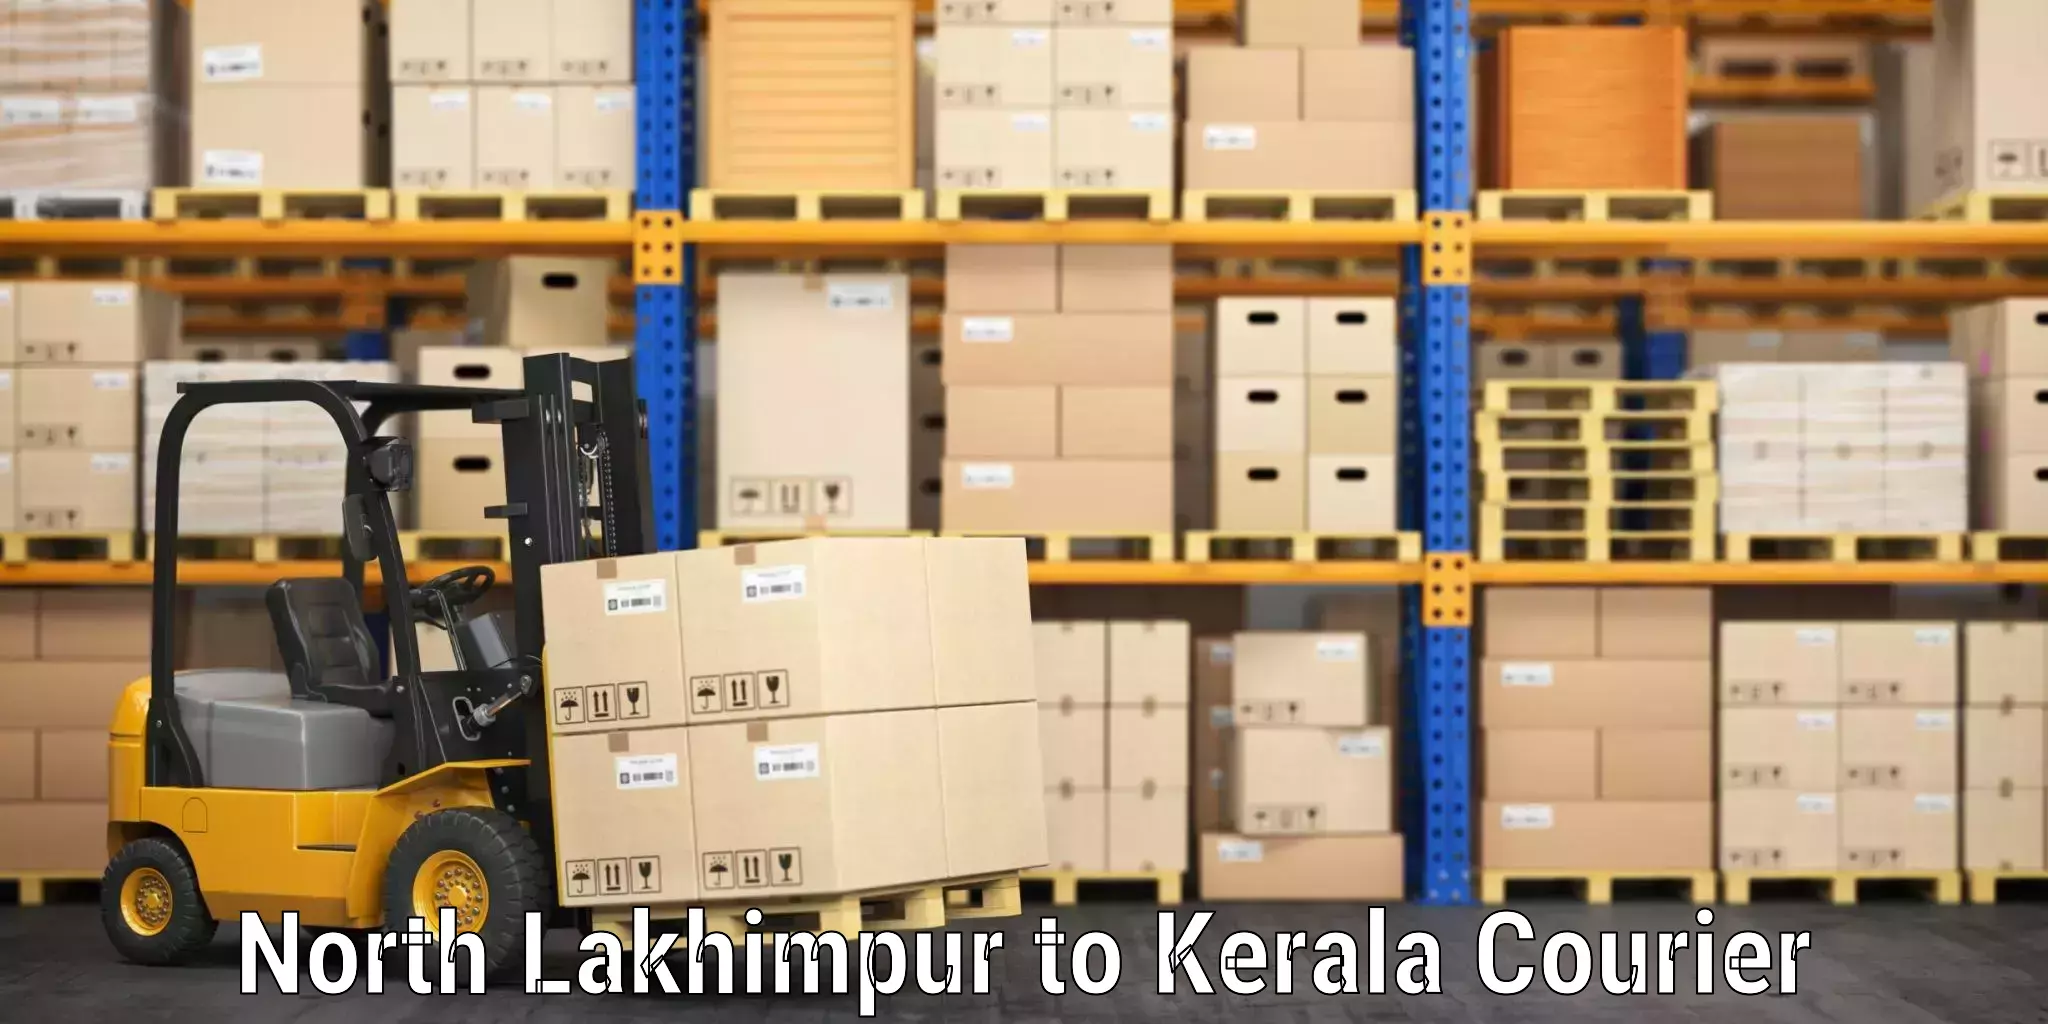 Baggage transport logistics North Lakhimpur to Kerala